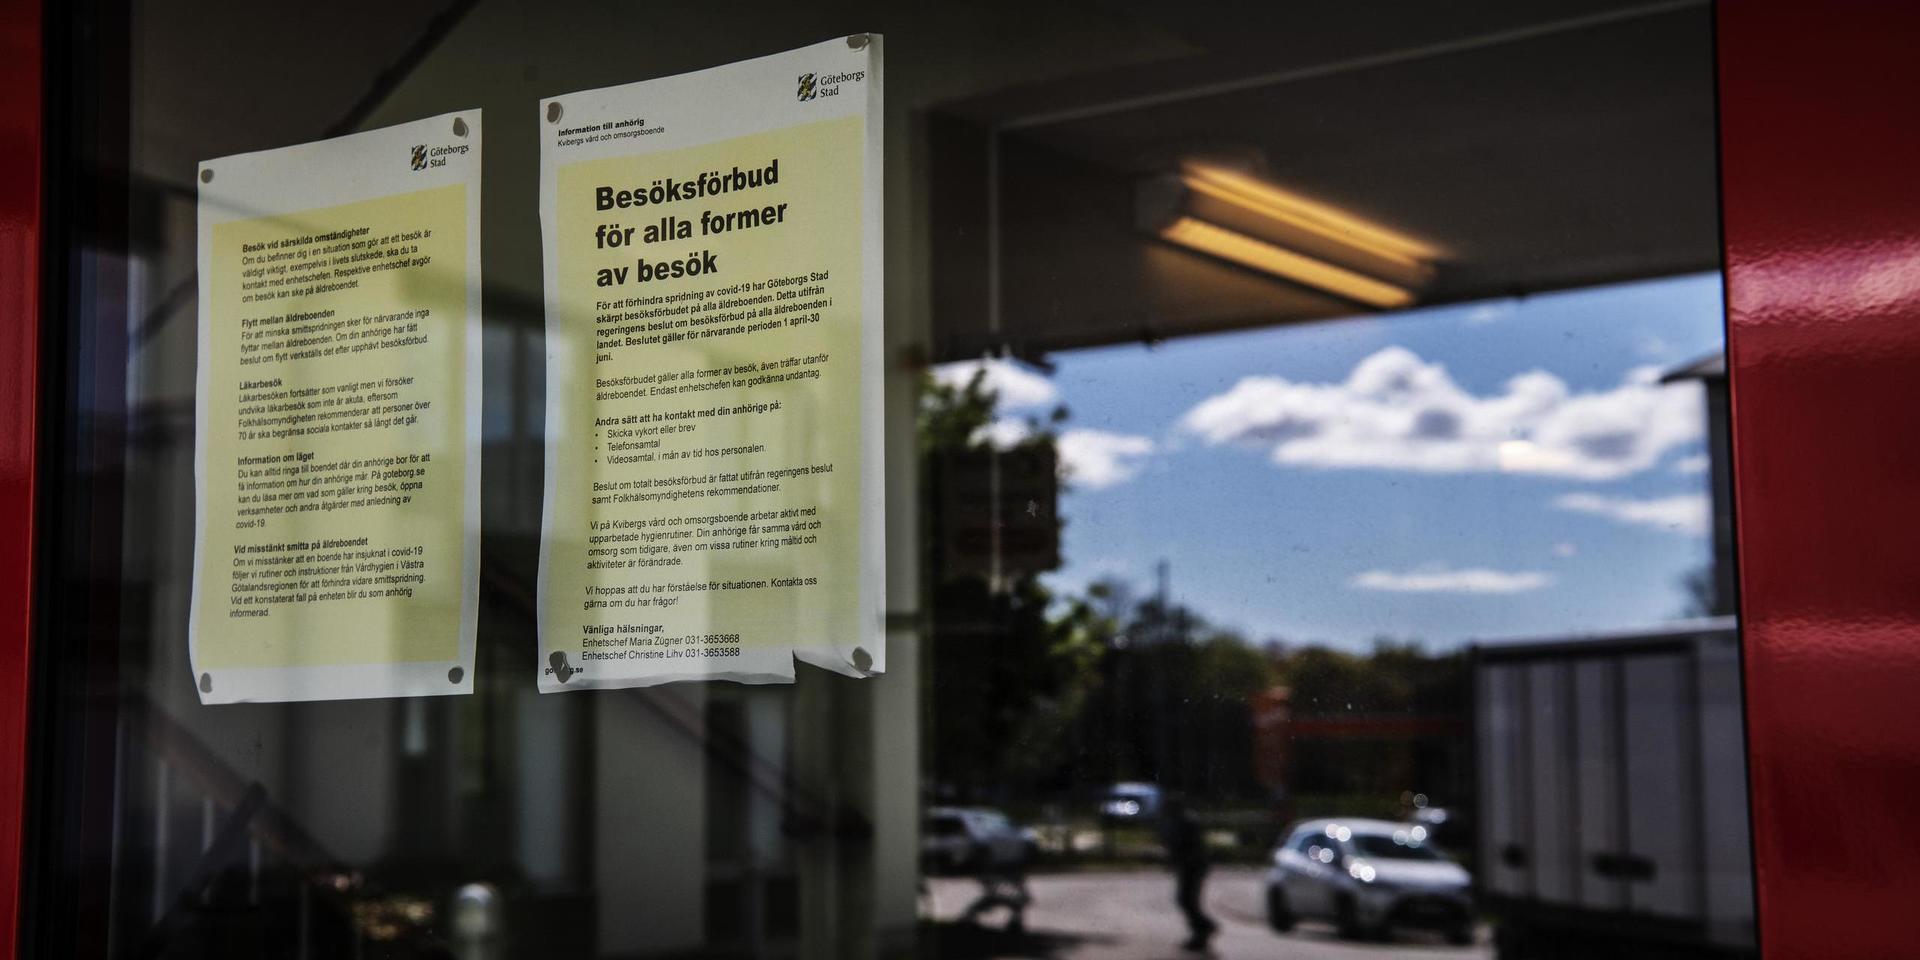 Mellan den 1 april och 1 oktober rådde nationellt besöksförbud på landets äldreboenden. Beslutet som Göteborgs stad nu har fattat är inte ett förbud, men kommunens uppmaning är samtidigt: ”Besök inte äldreboenden”.